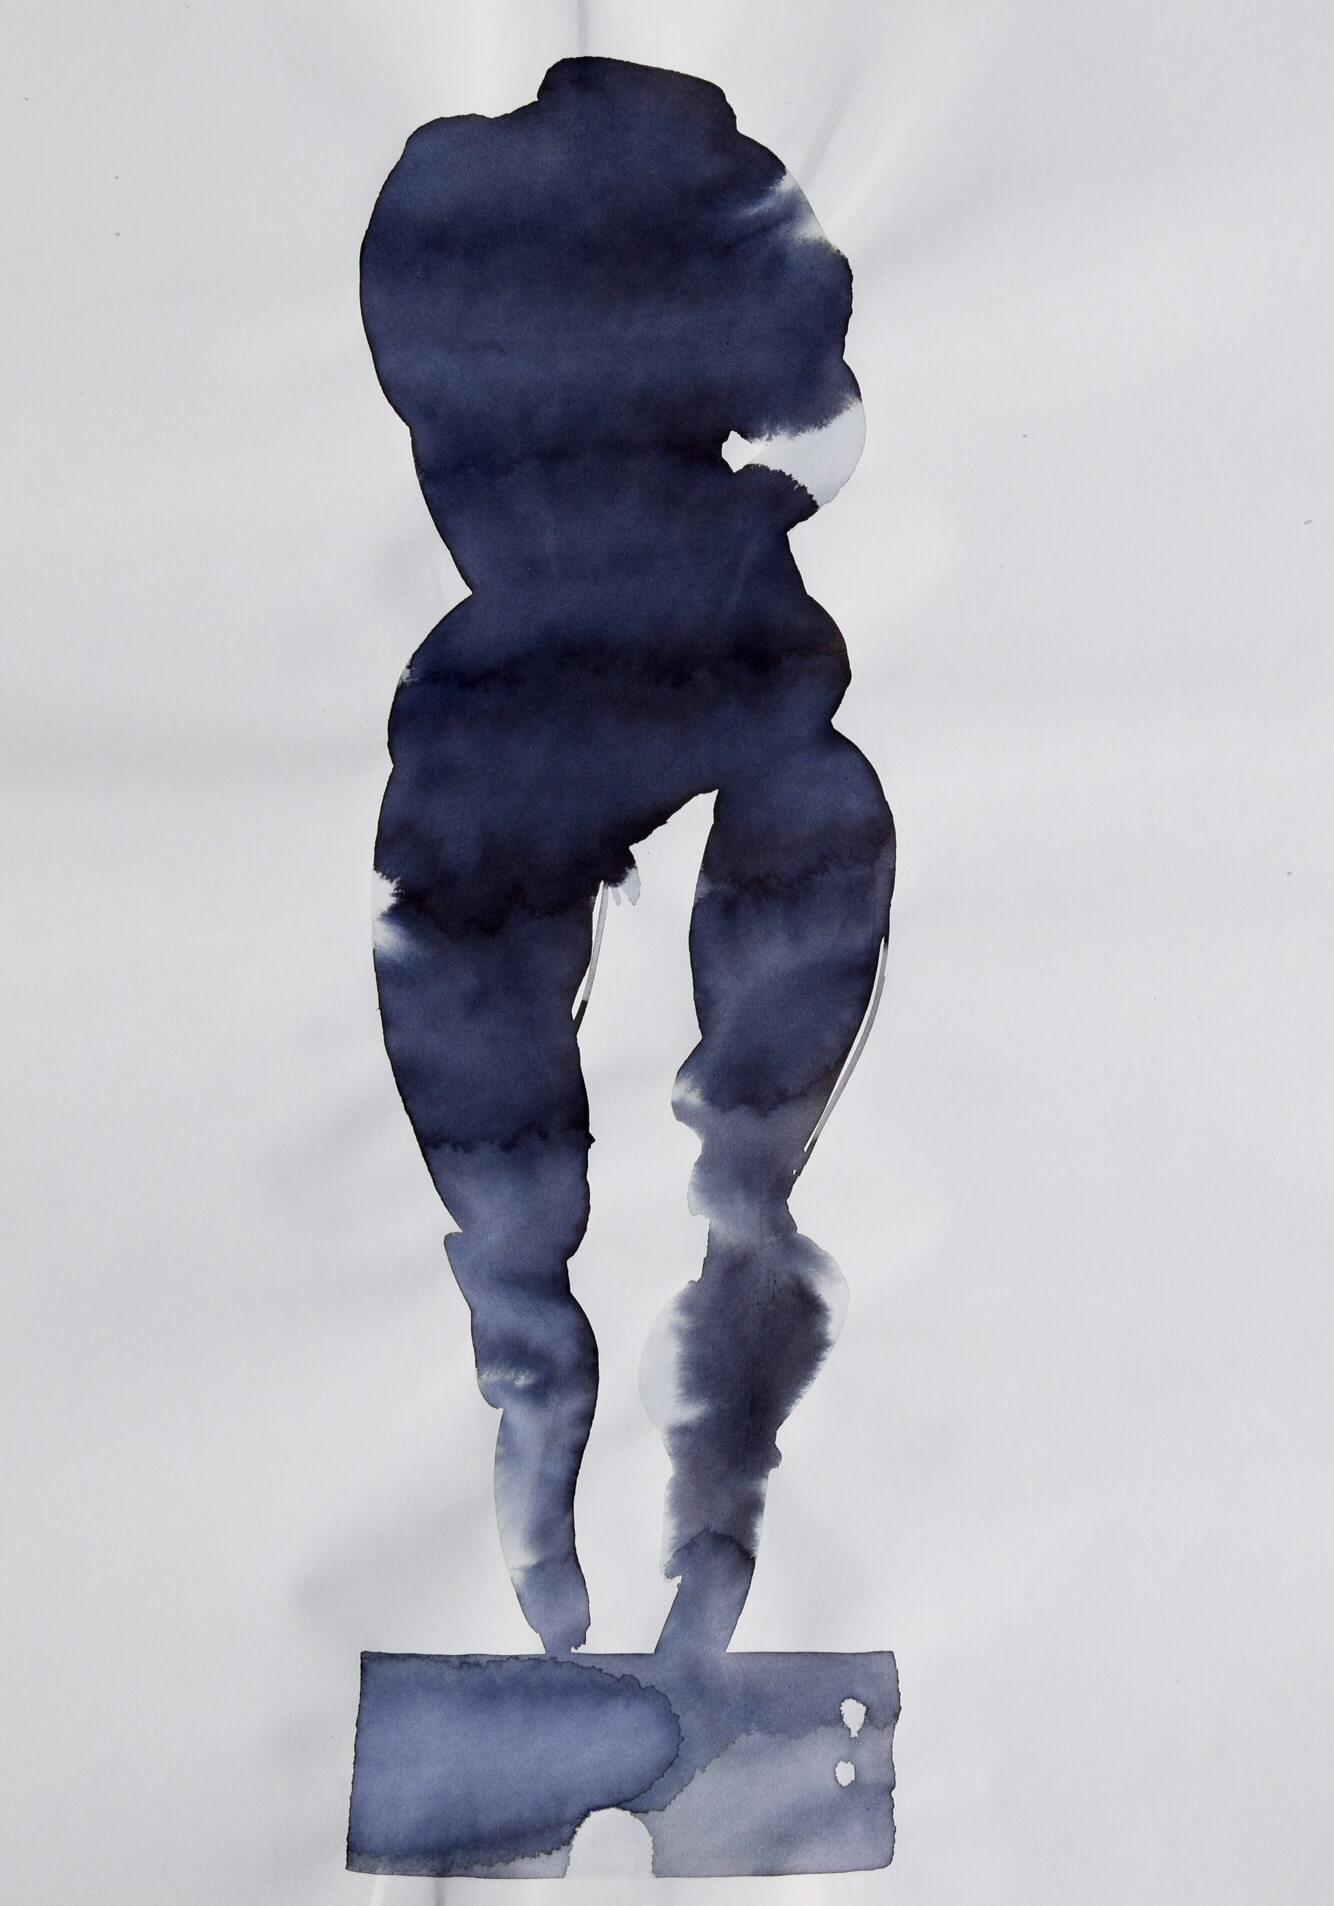 Federico Branchetti - Quadri dipinti - Corpo, acqua e nebbia 2019 - 3